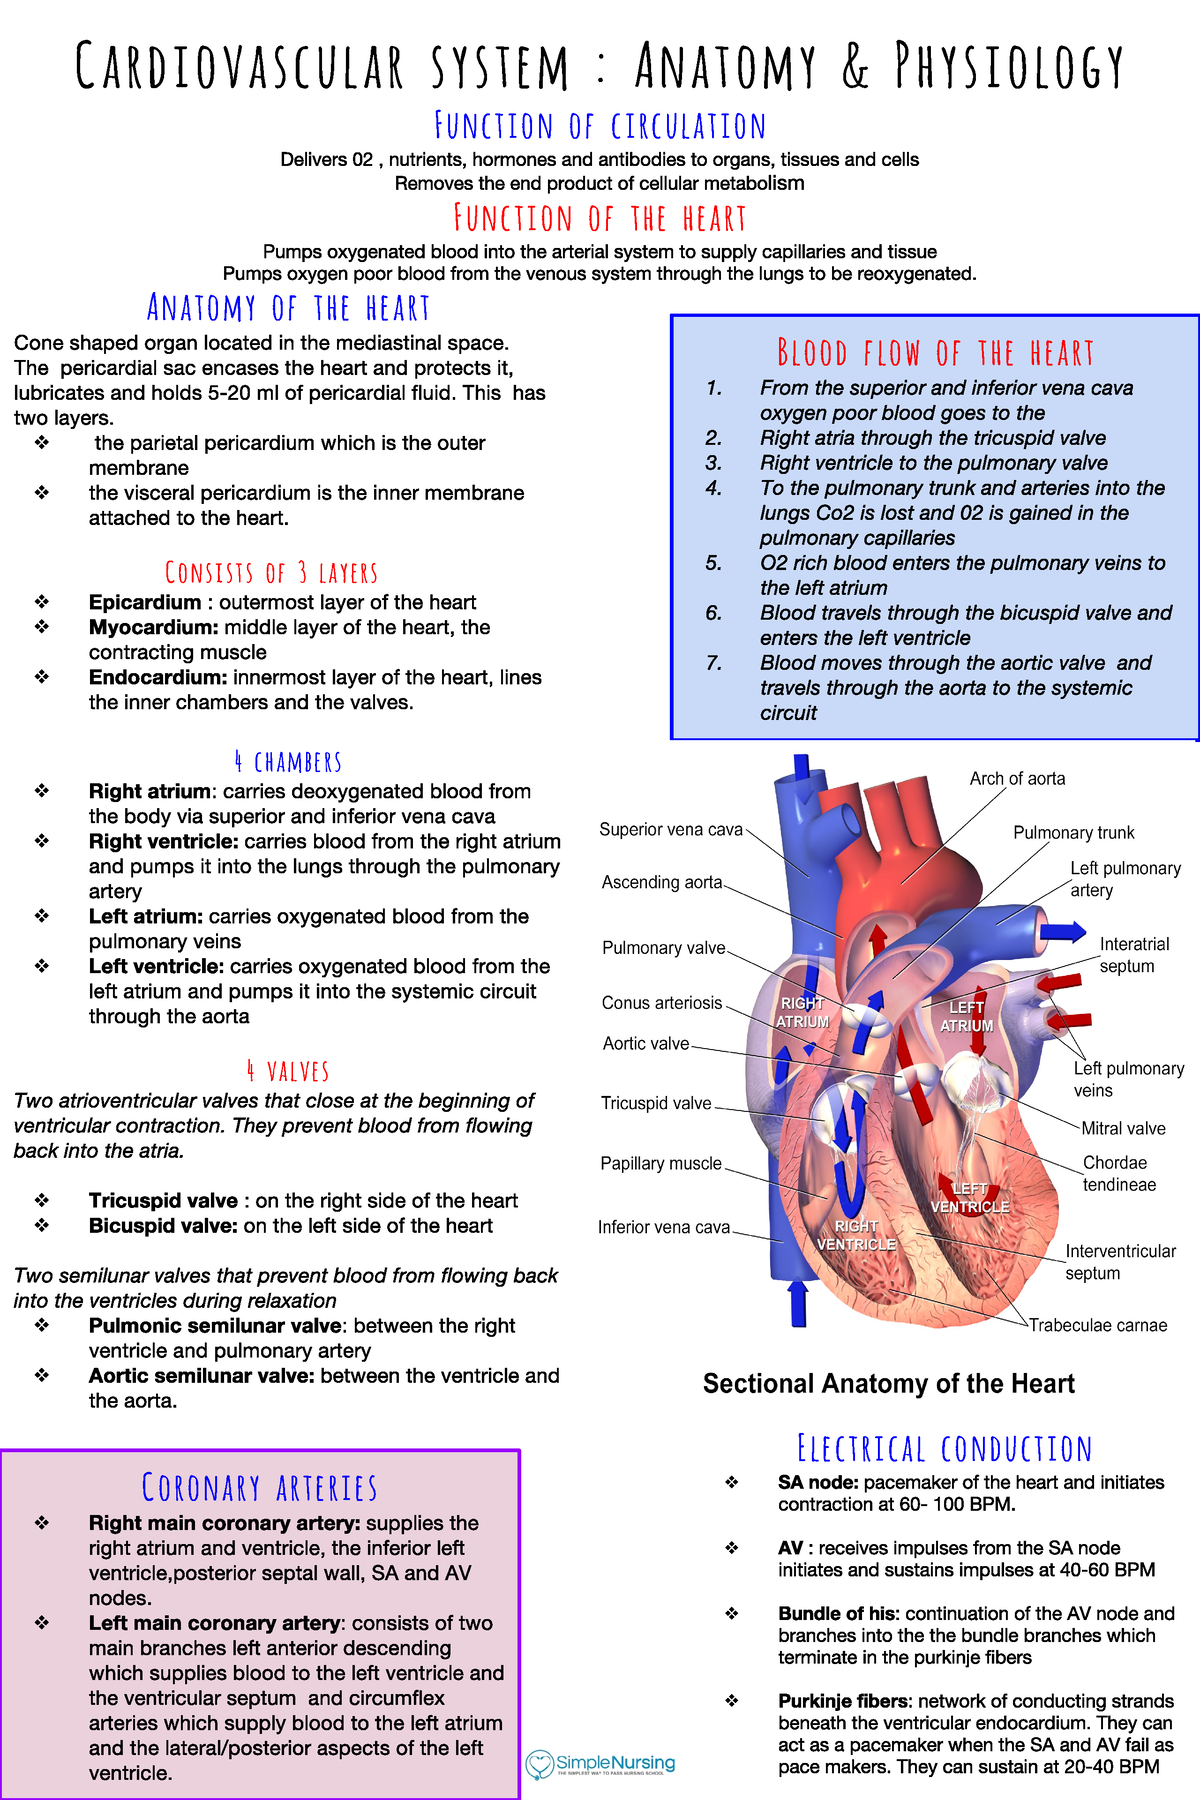 cardiovascular system presentation pdf